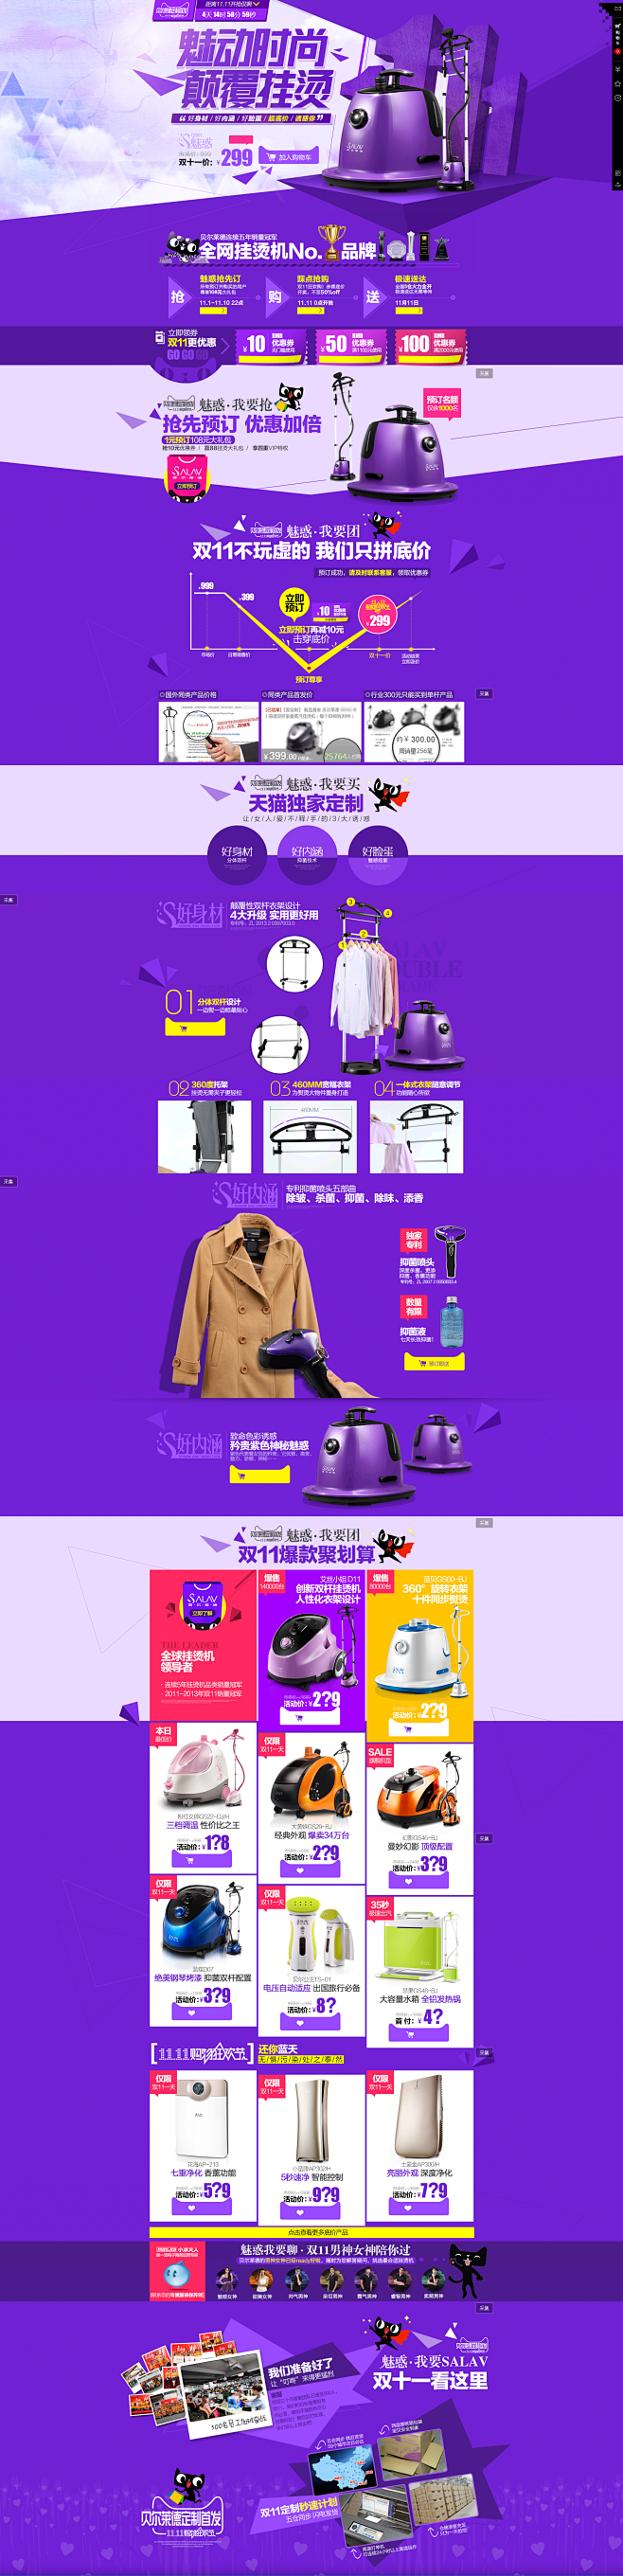 空气净化器家用电器紫色 #活动页面#